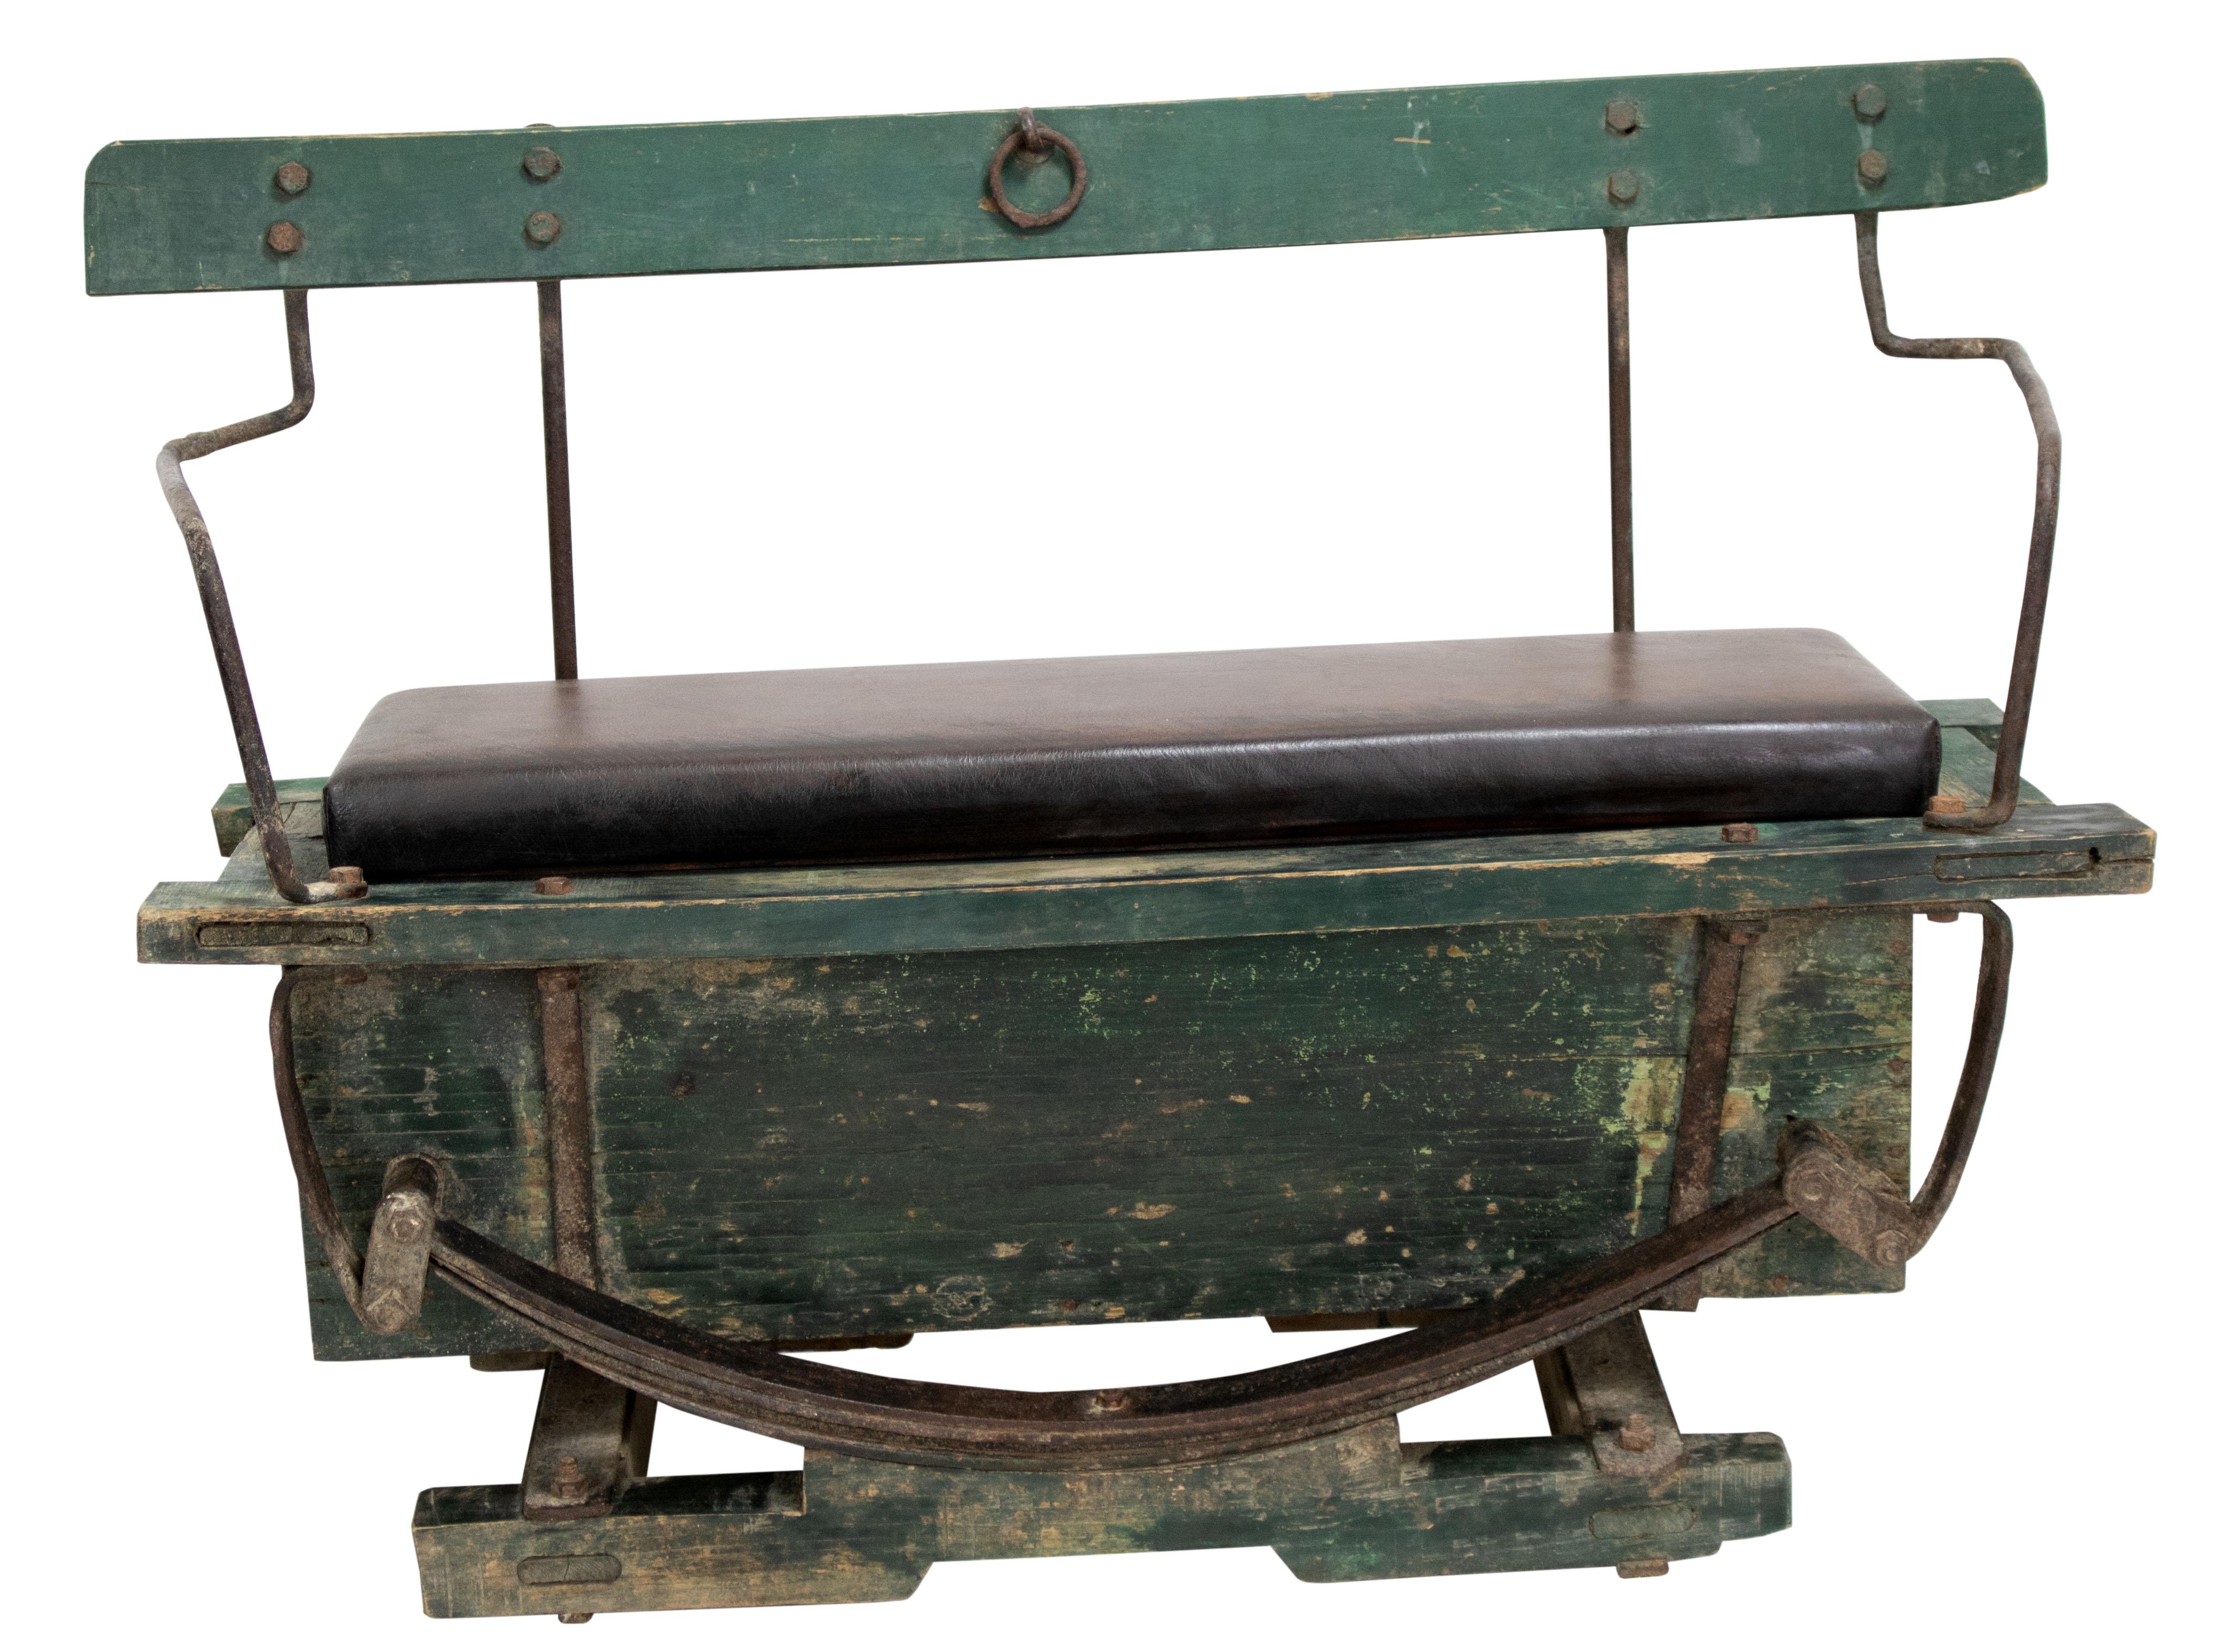 Il s'agit d'un banc de calèche vintage, qui peut être utilisé comme siège décoratif dans une antichambre, sur une terrasse ou autour d'un gril. Le banc a été fabriqué en cuir véritable. Un grand compartiment de rangement se trouve sous le siège.